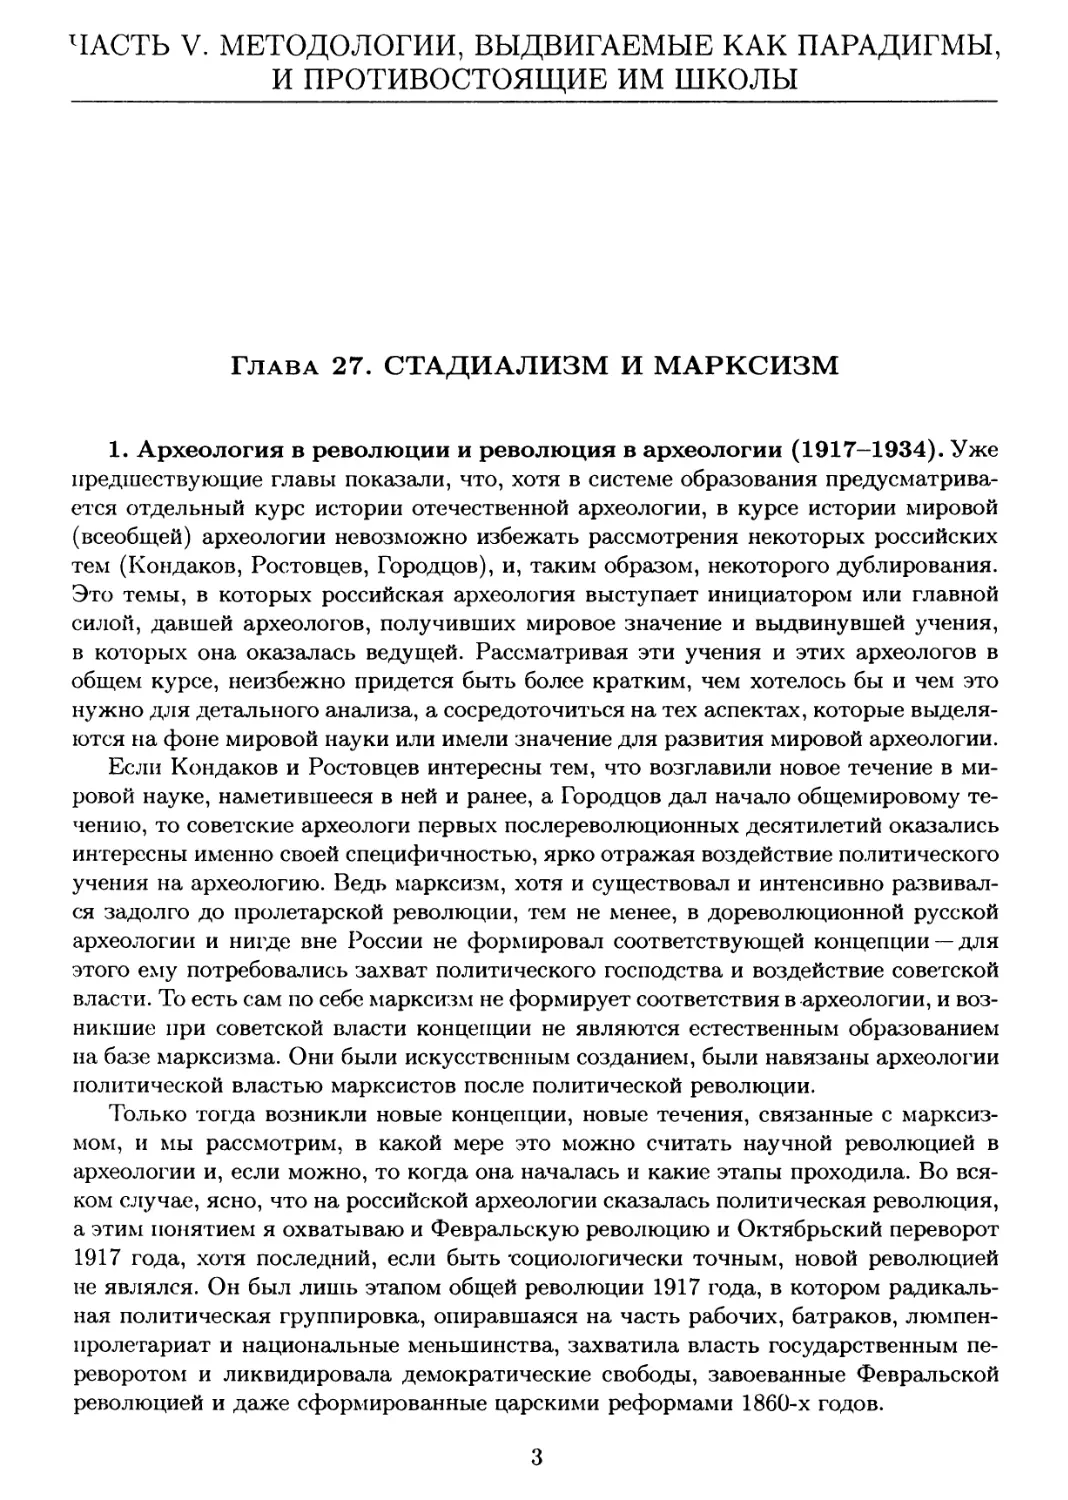 Часть V. Методологии, выдвигаемые как парадигмы и противостоящие им школы
Глава 27. Стадиализм и марксизм